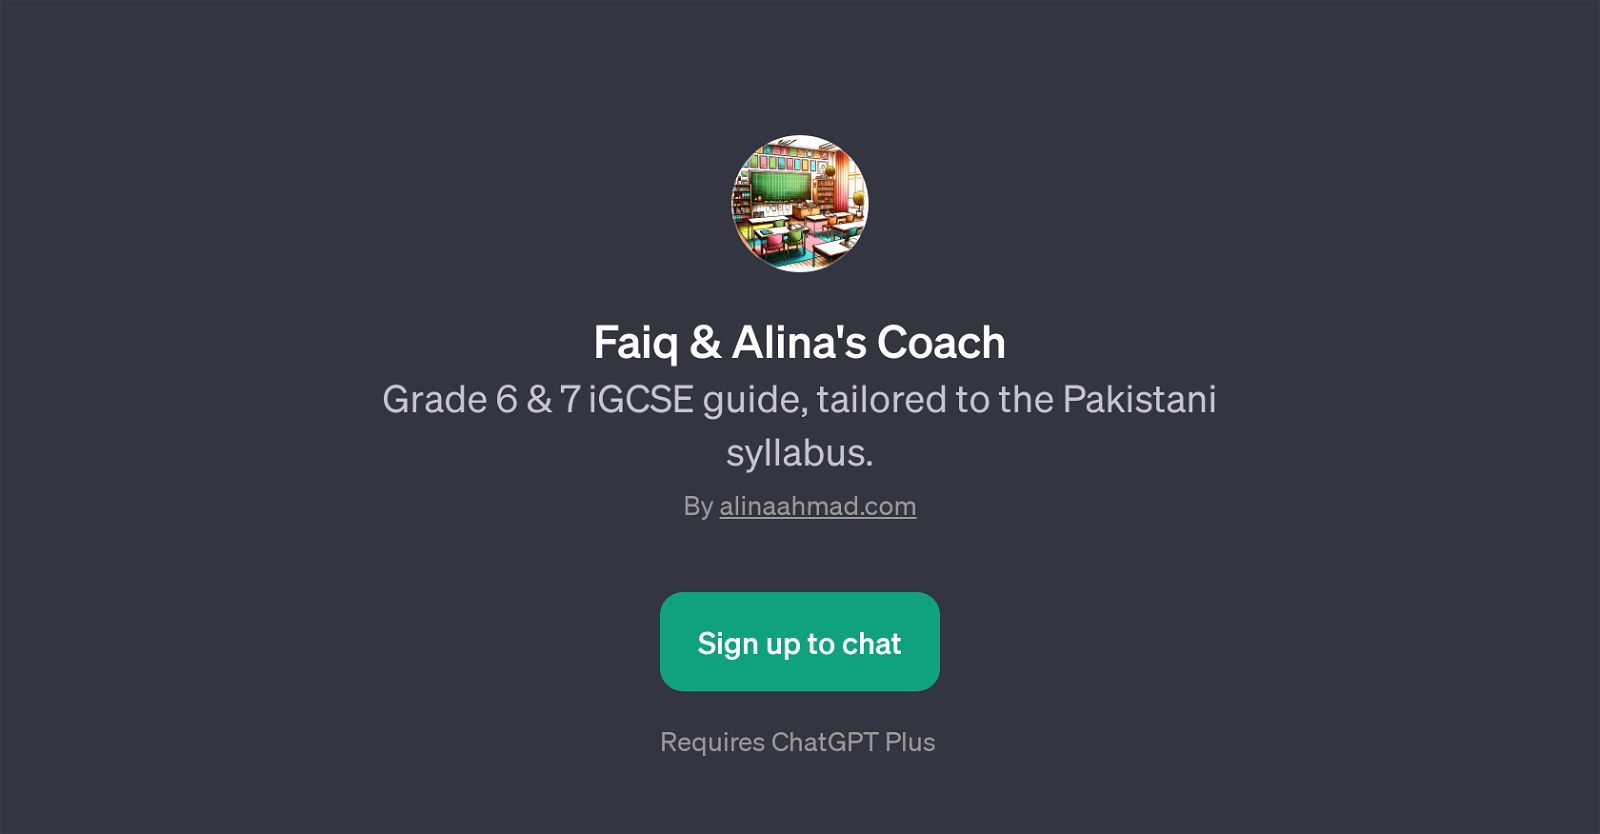 Faiq & Alina's Coach website